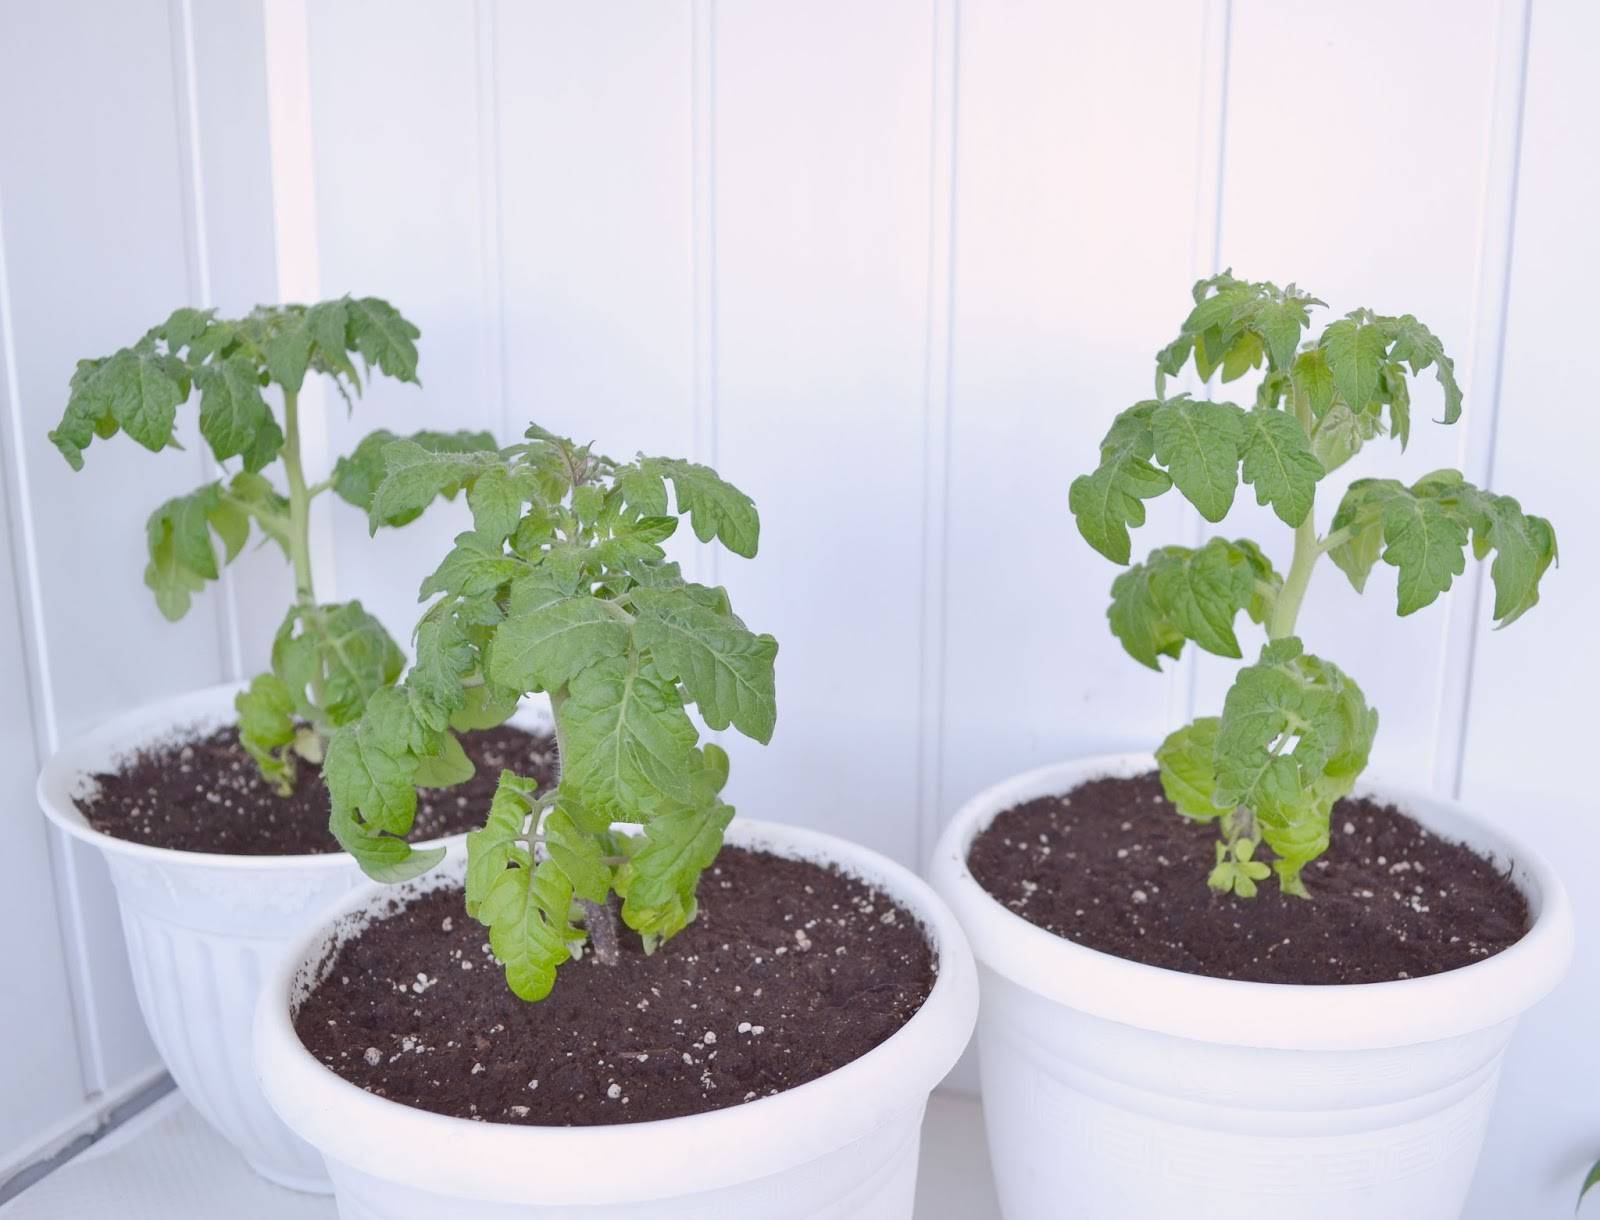 Огород на подоконнике или балконе: все о том, как вырастить помидоры черри в домашних условиях